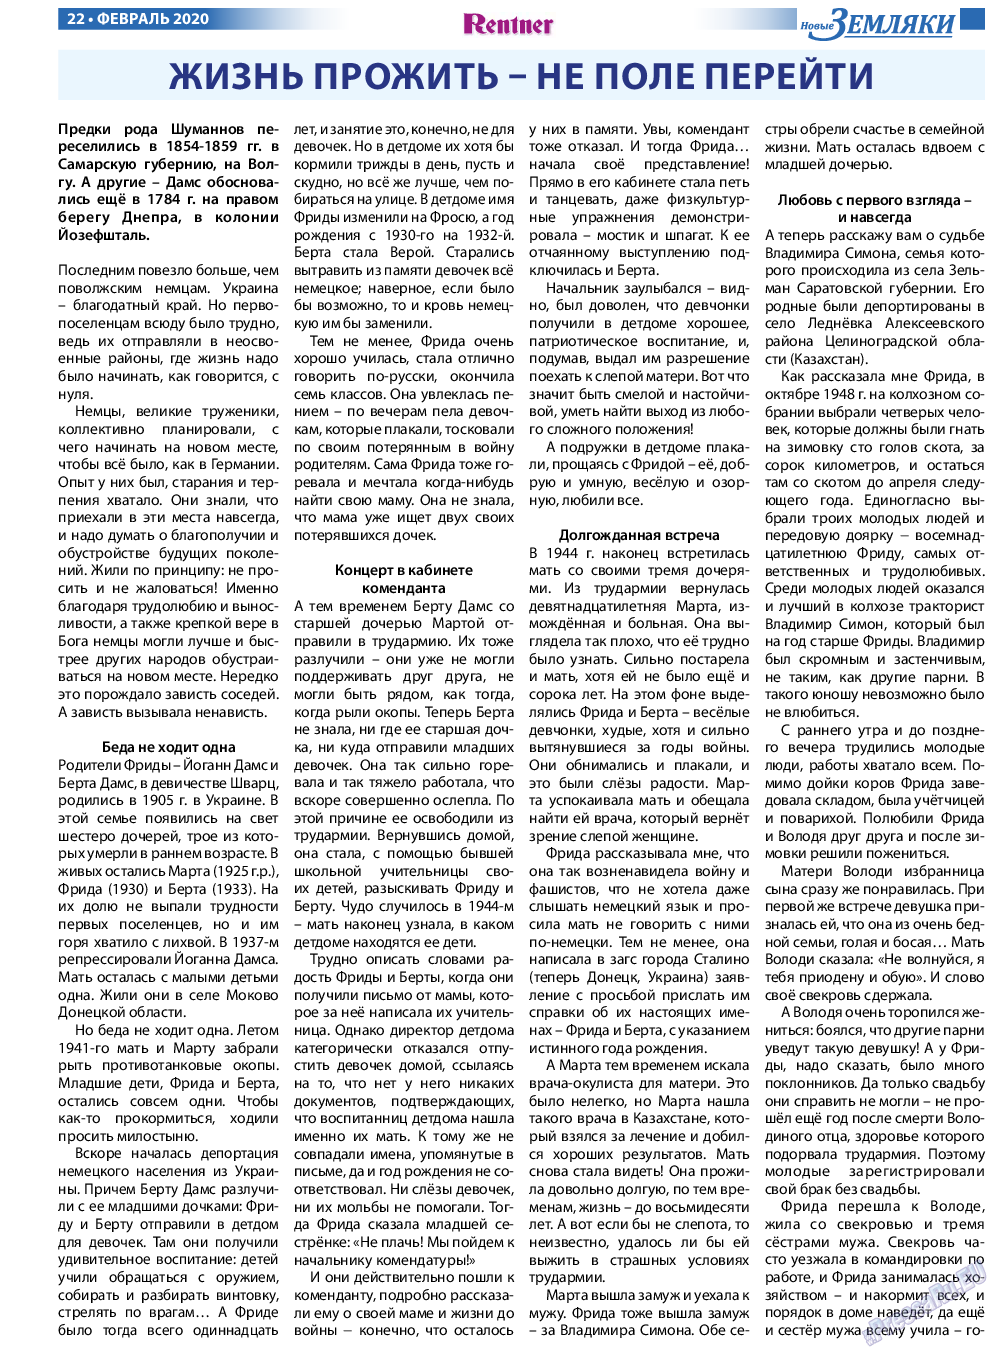 Новые Земляки, газета. 2020 №2 стр.22